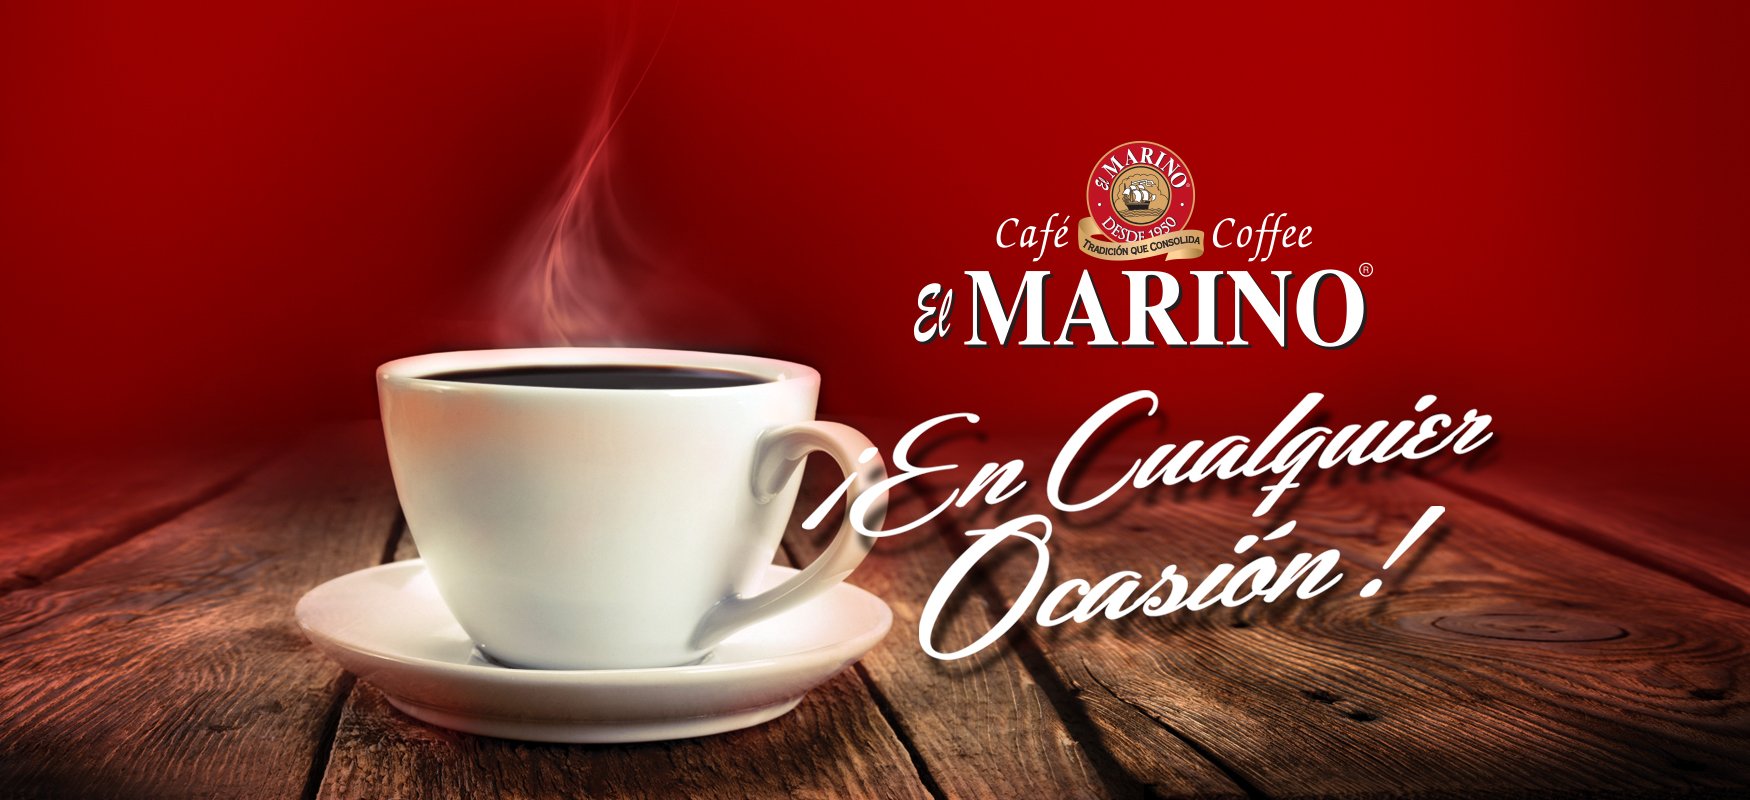 cafe el marino mazatlan